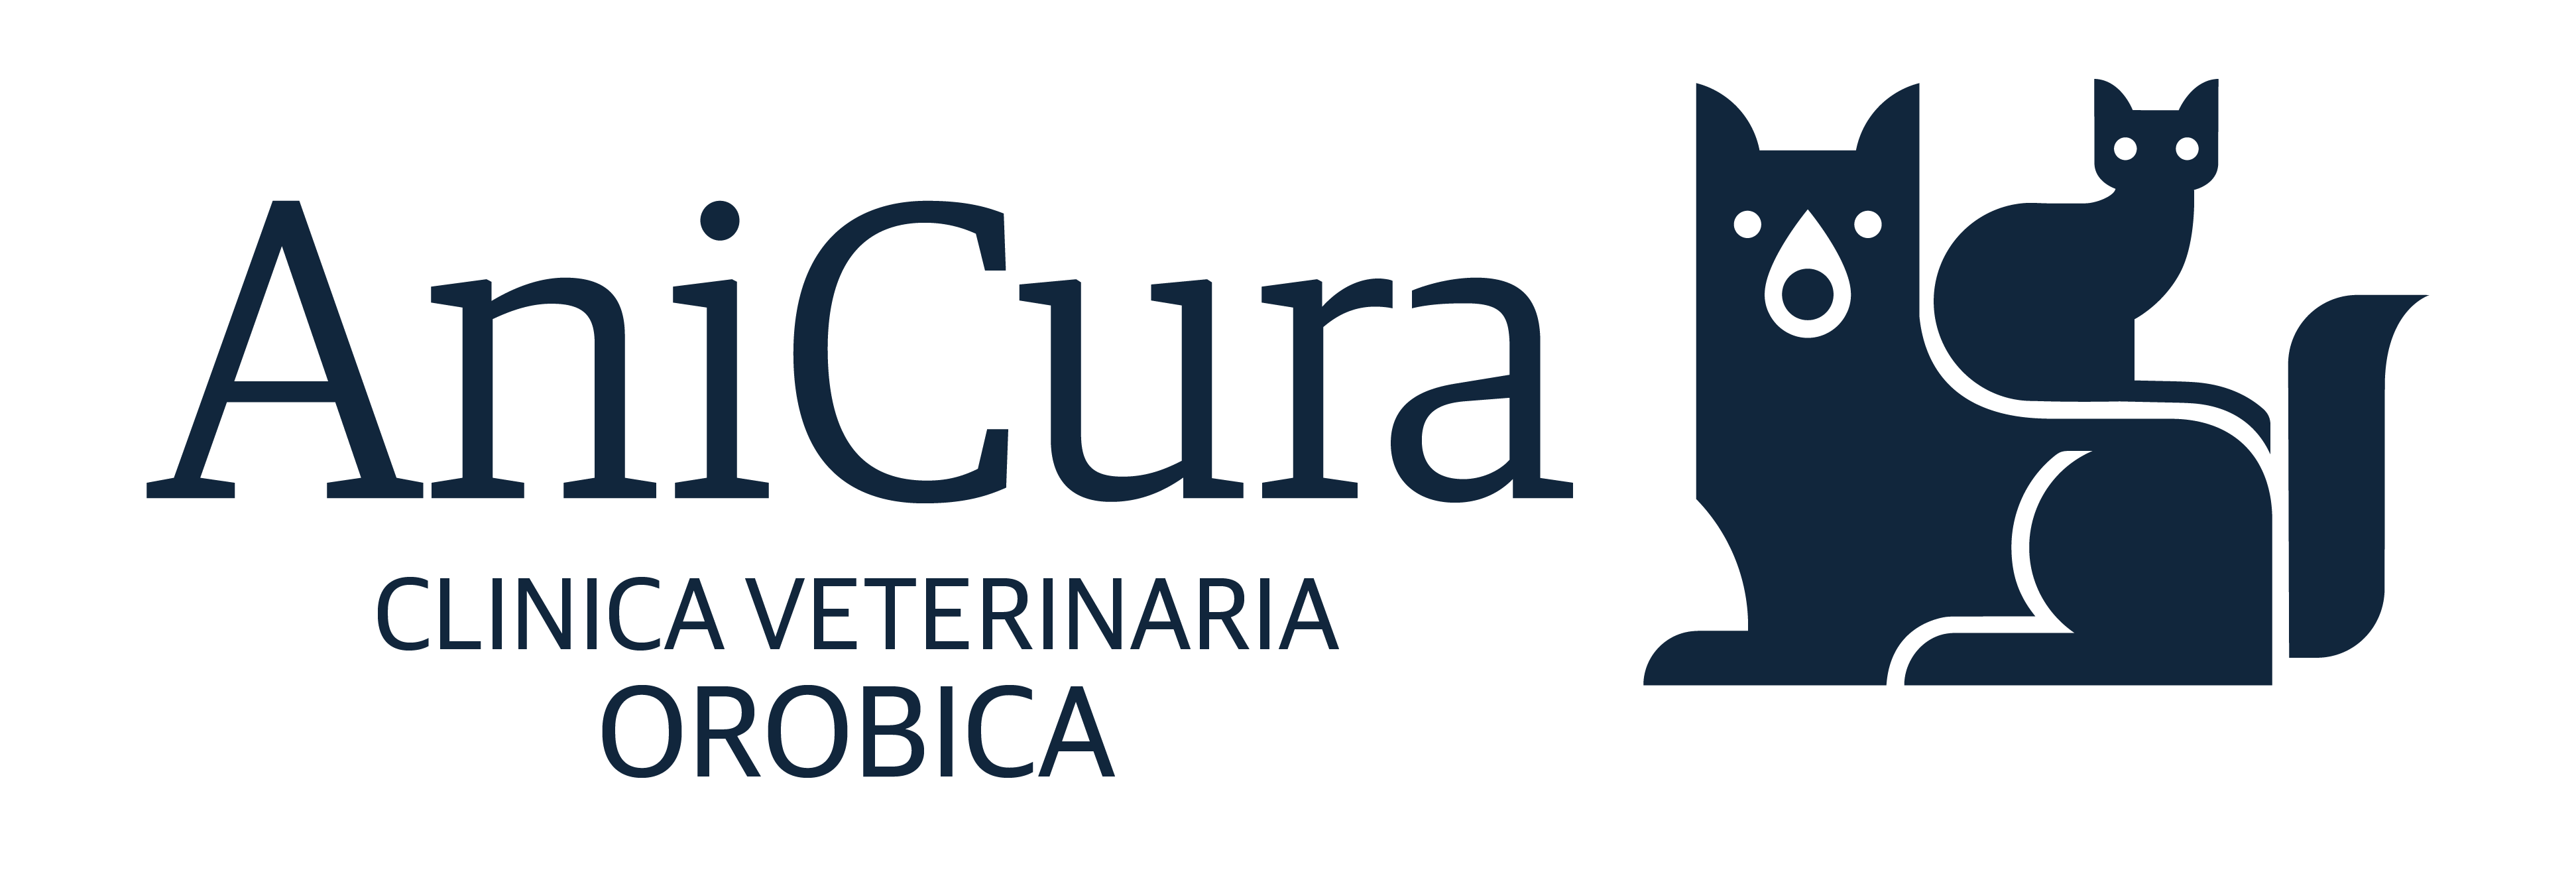 Clinica Veterinaria Orobica logo